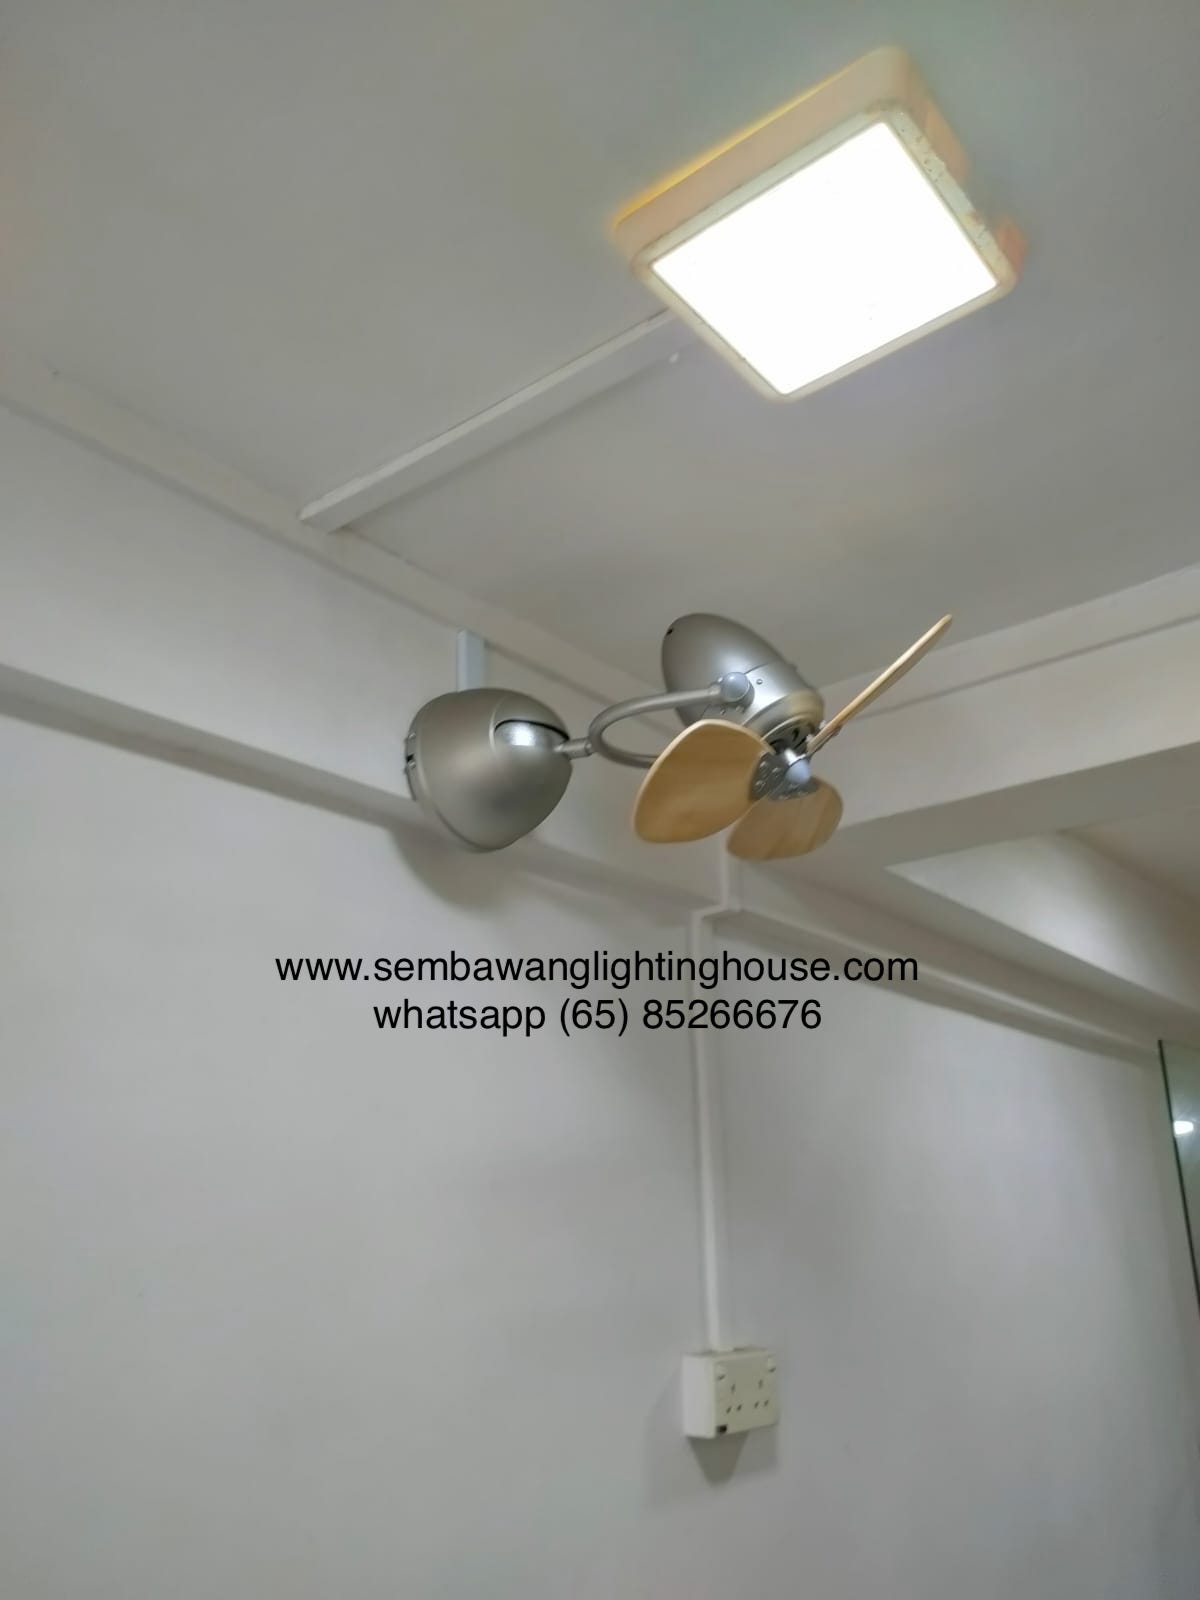 vento-fino-corner-fan-sample-10-sembawang-lighting-house.jpg